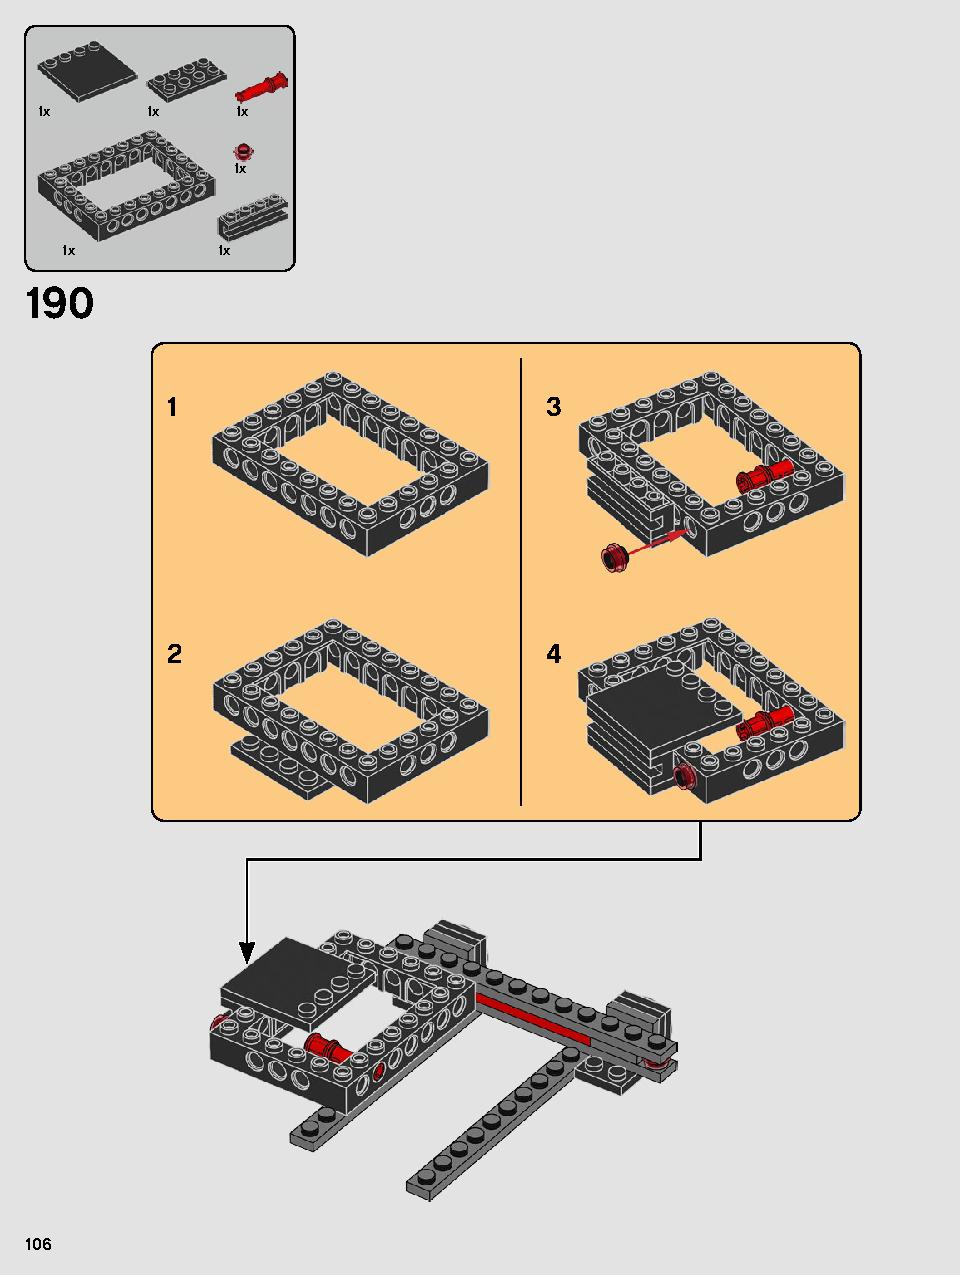 스타워즈 카일로 렌의 셔틀™ 75256 레고 세트 제품정보 레고 조립설명서 106 page